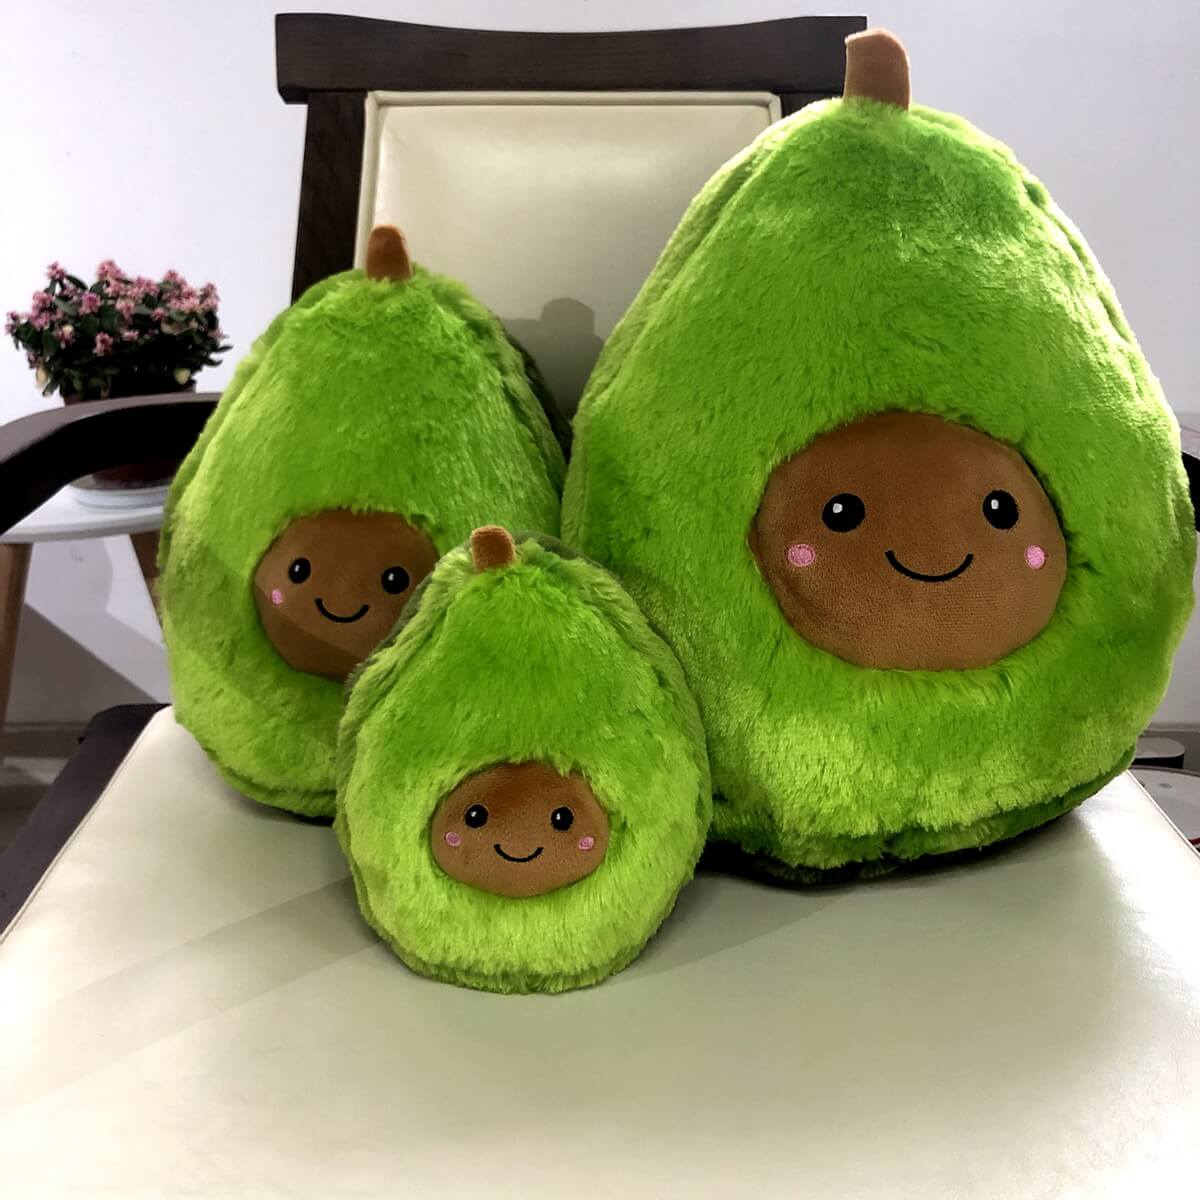 soft stuffed avocado toy 